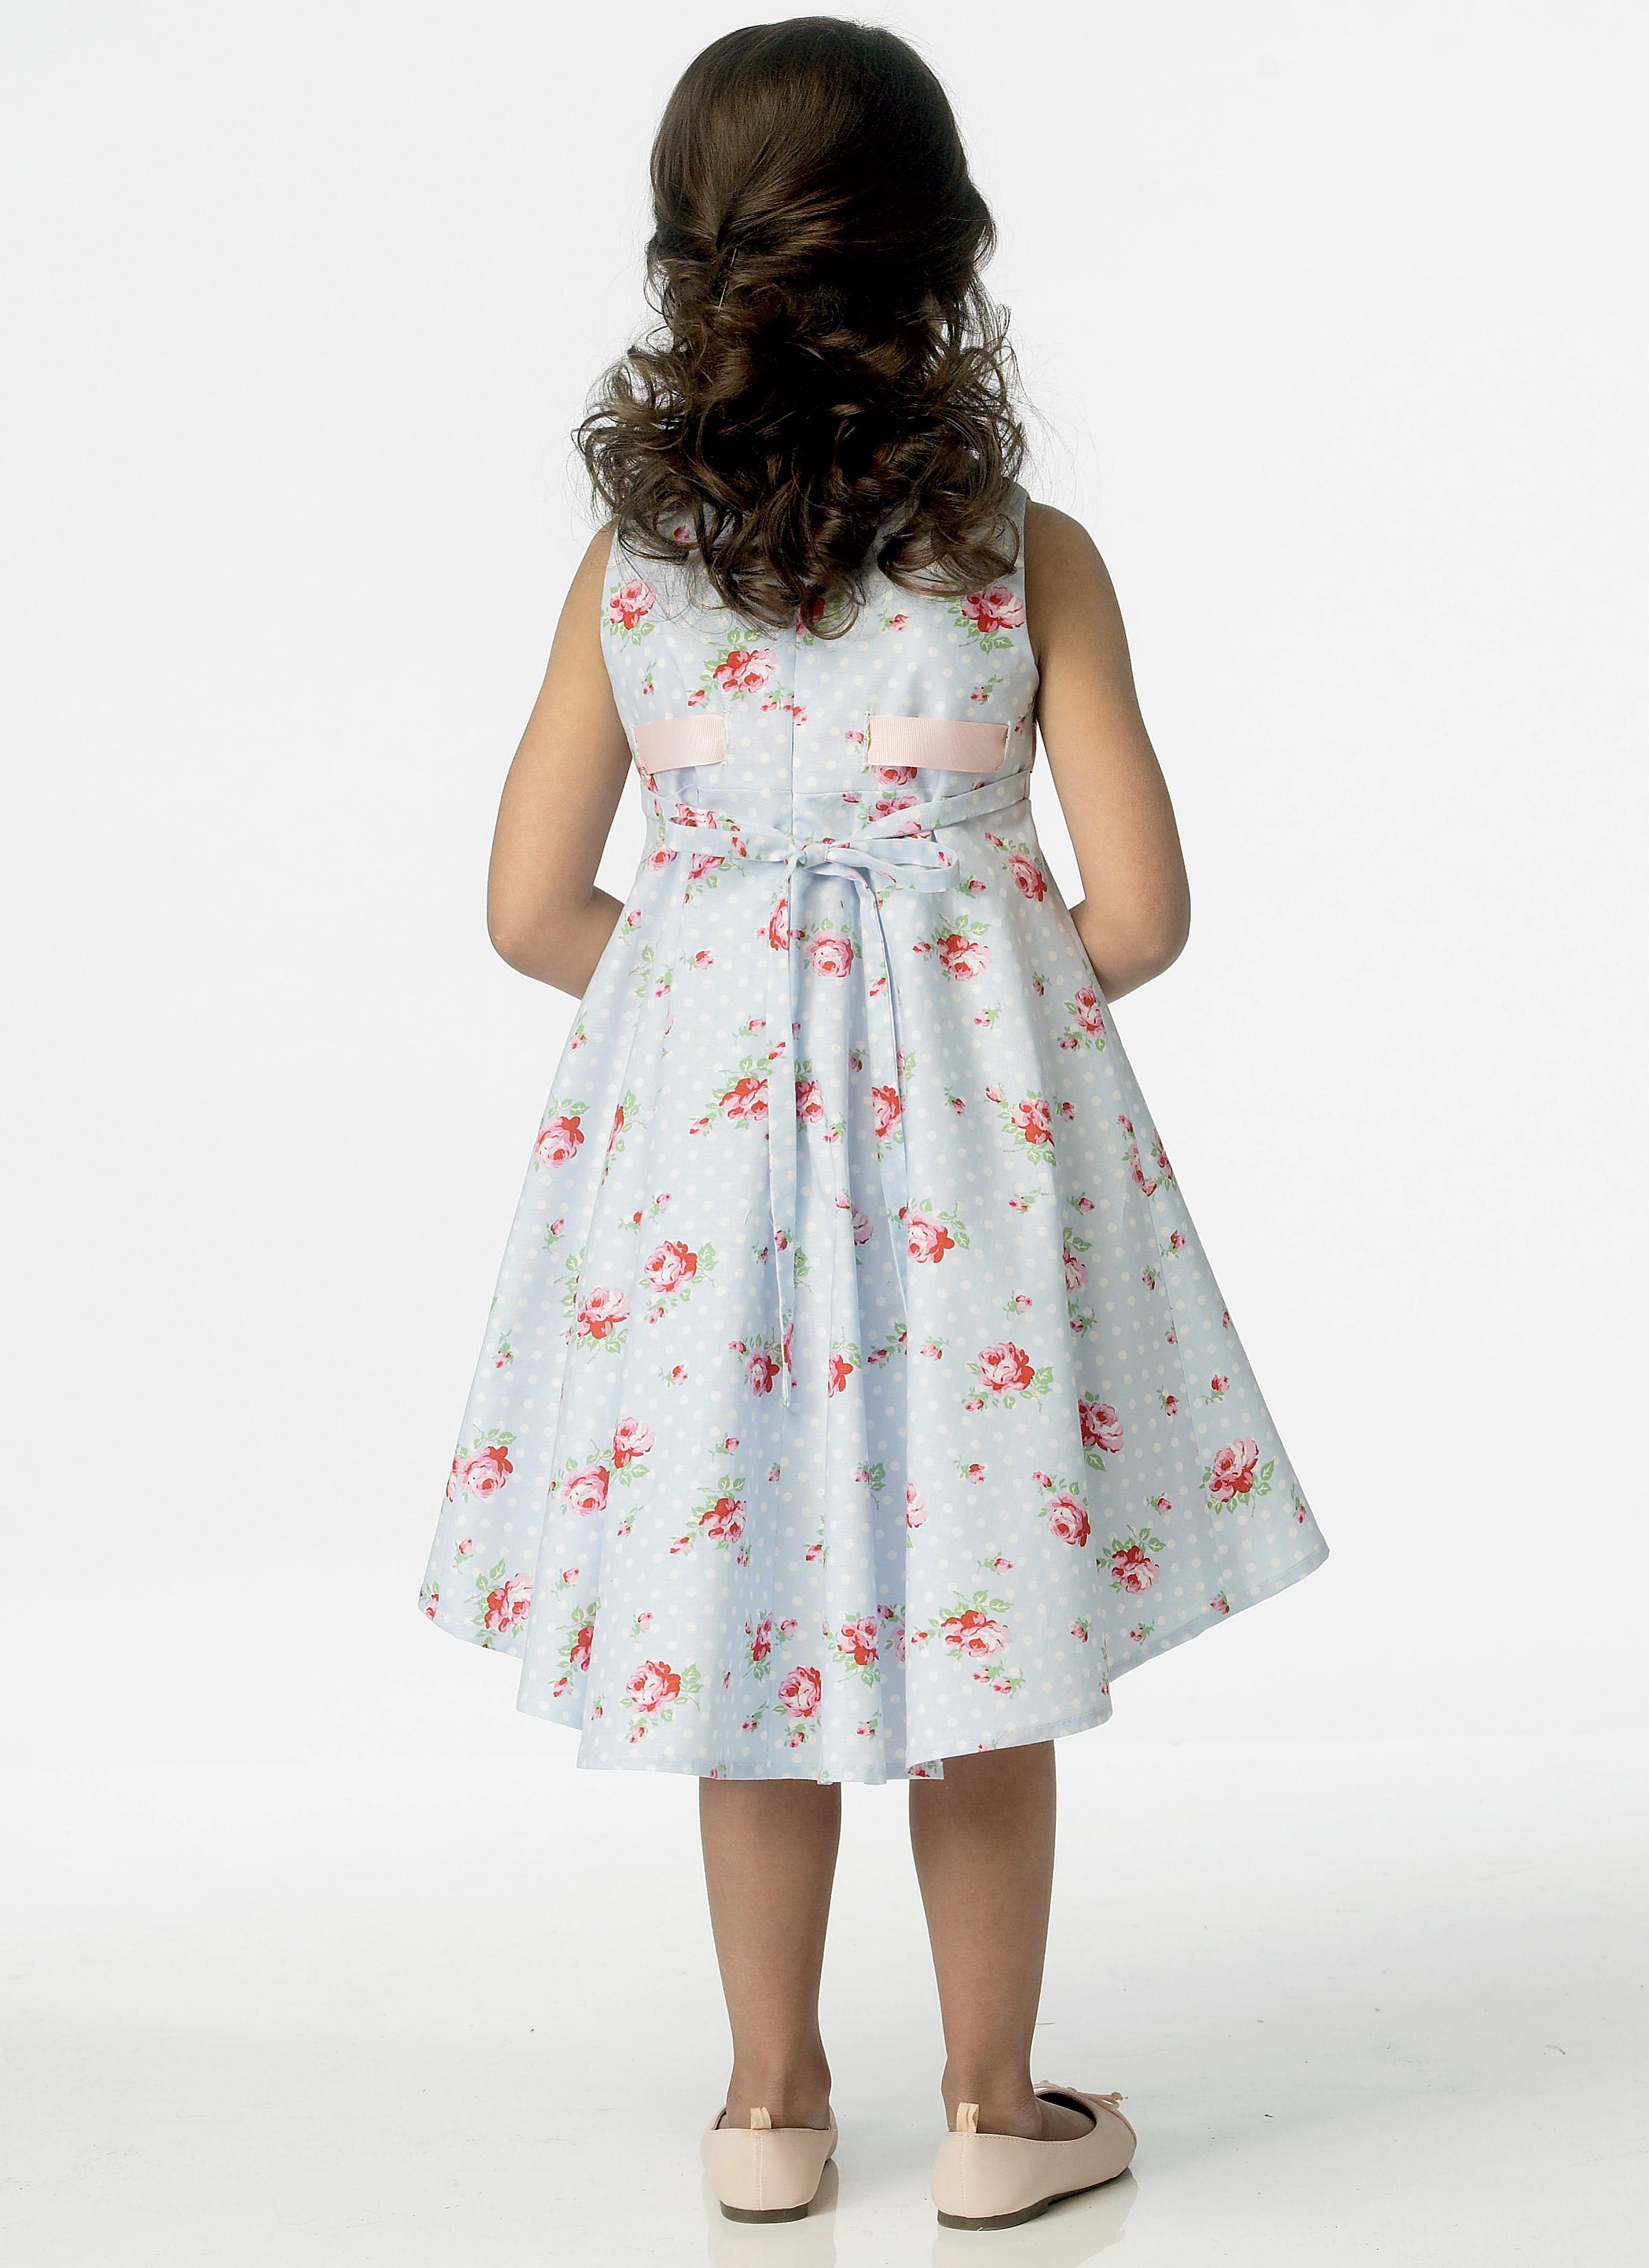 Butterick B6013 Children's/Girls' Dress